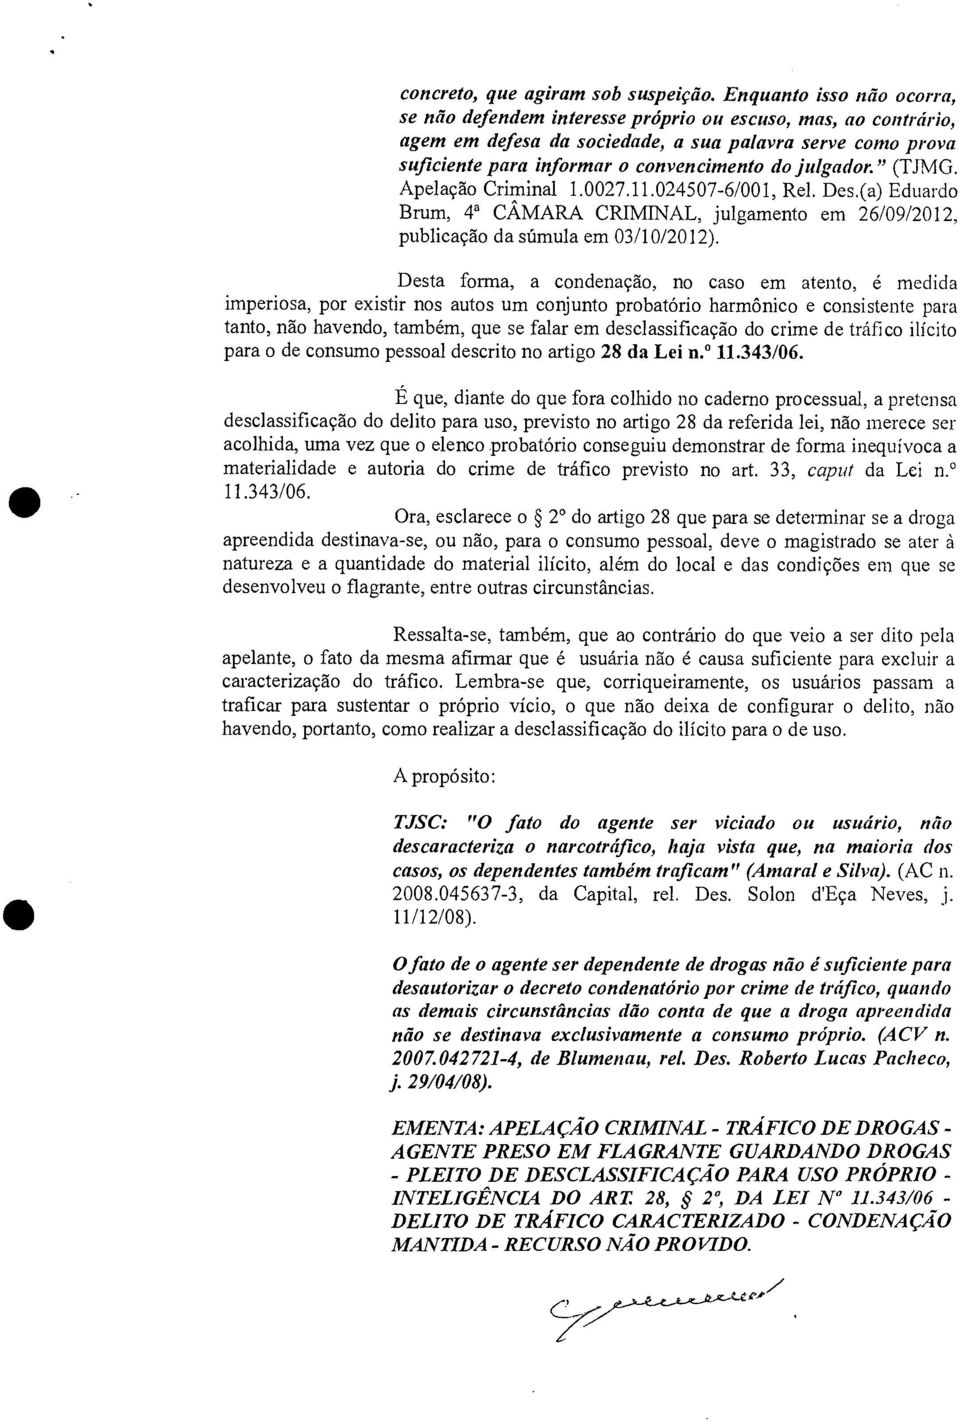 julgador." (TJMG. Apelação Criminal 1.0027.11.024507-6/001, Rel. Des.(a) Eduardo Brum, 4a CÂMARA CRIMINAL, julgamento em 26/09/2012, publicação da súmula em 03/10/2012).